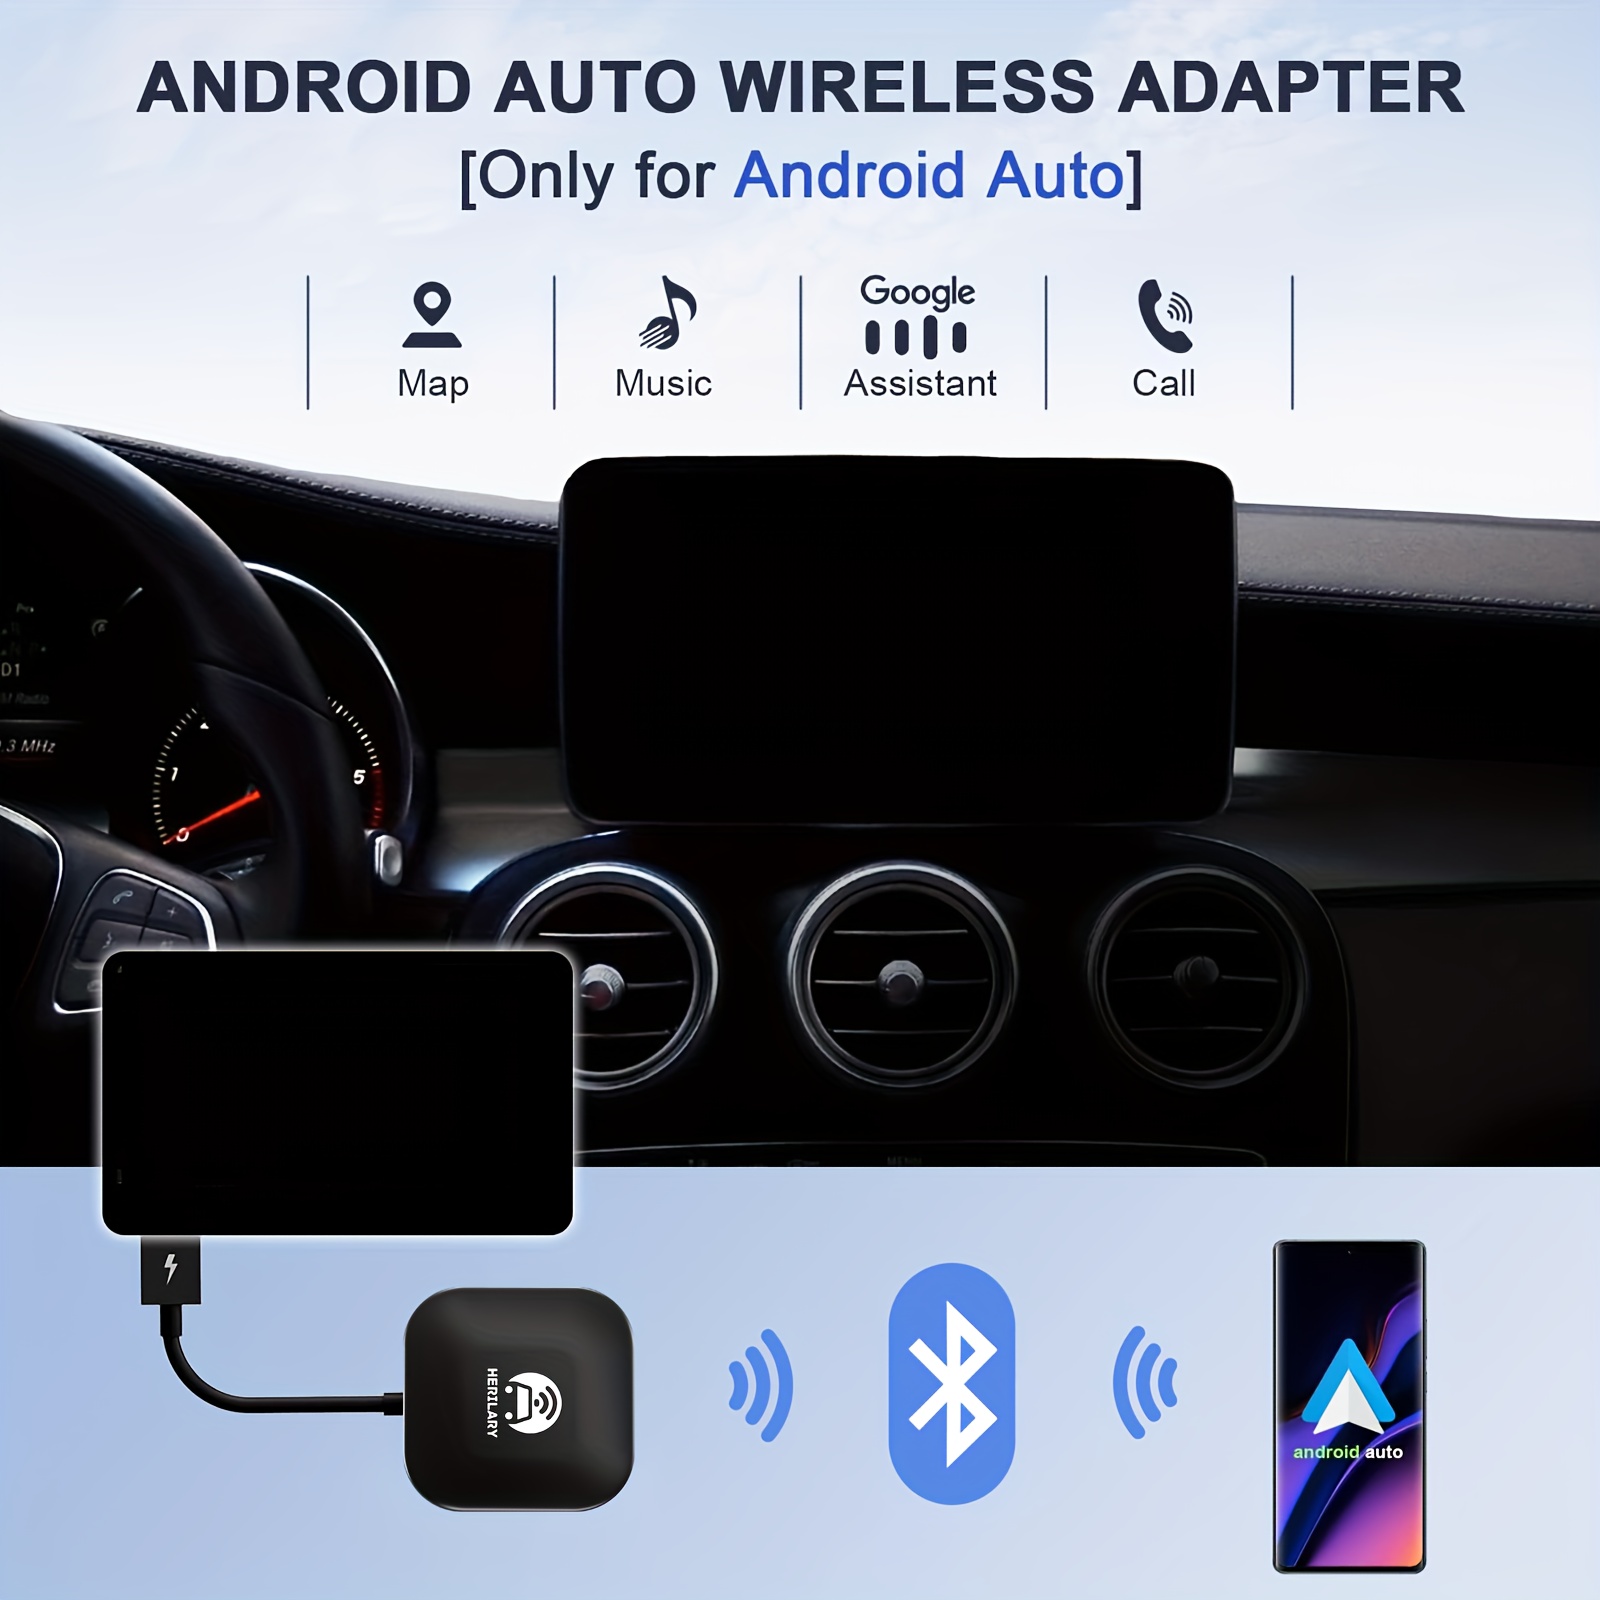  Adaptador inalámbrico Android Auto para automóvil